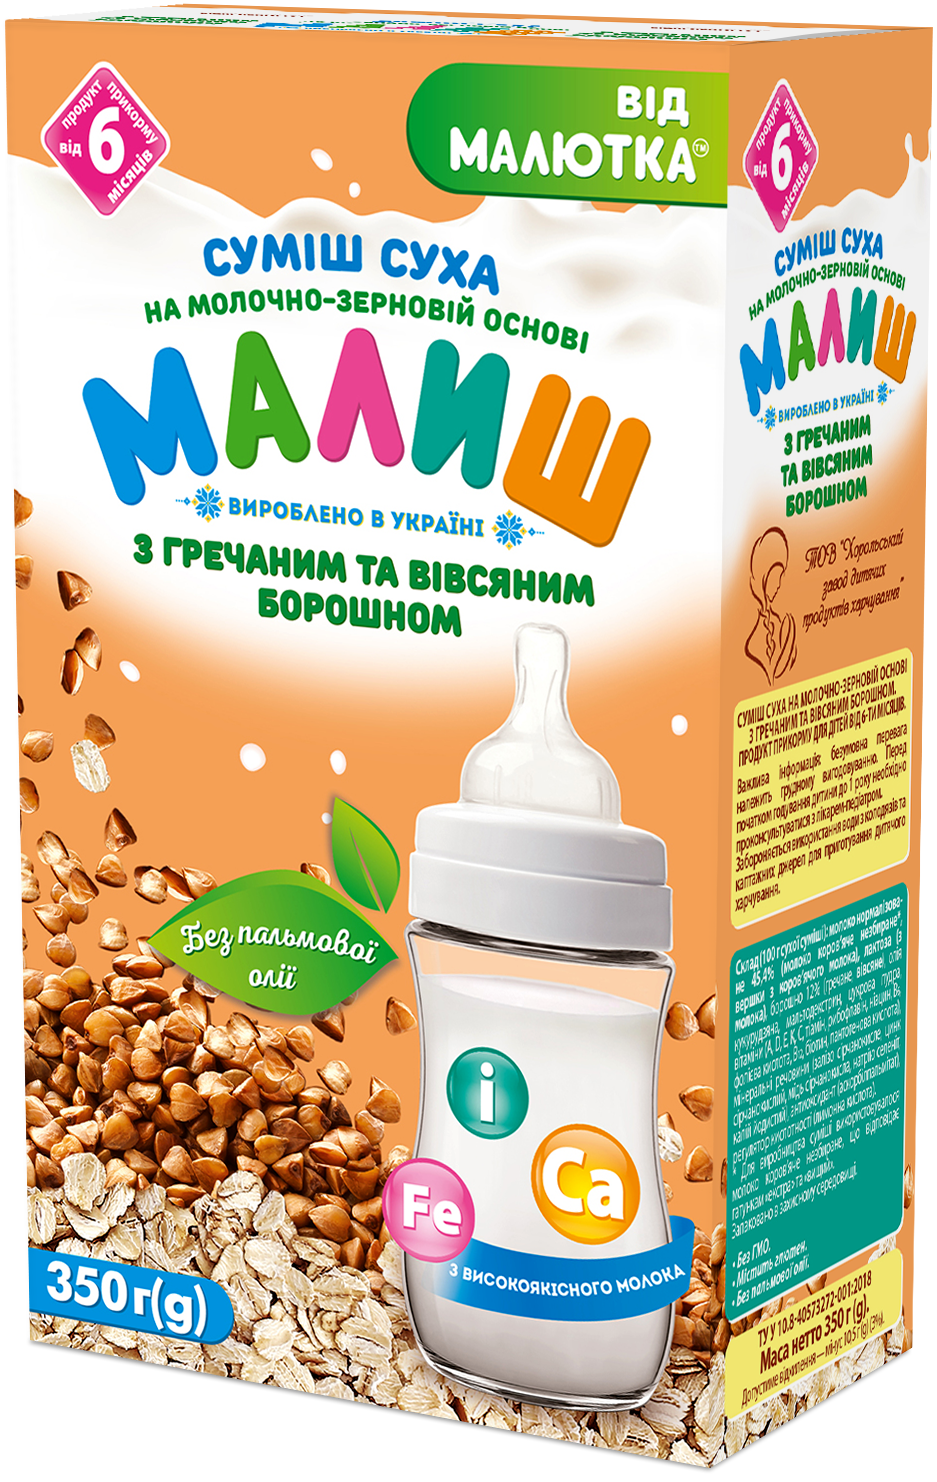 Суміш суха на молочно-зерновій основі з гречаним та вівсяним борошном. Продукт прикорму для дітей від 6-ти місяців.